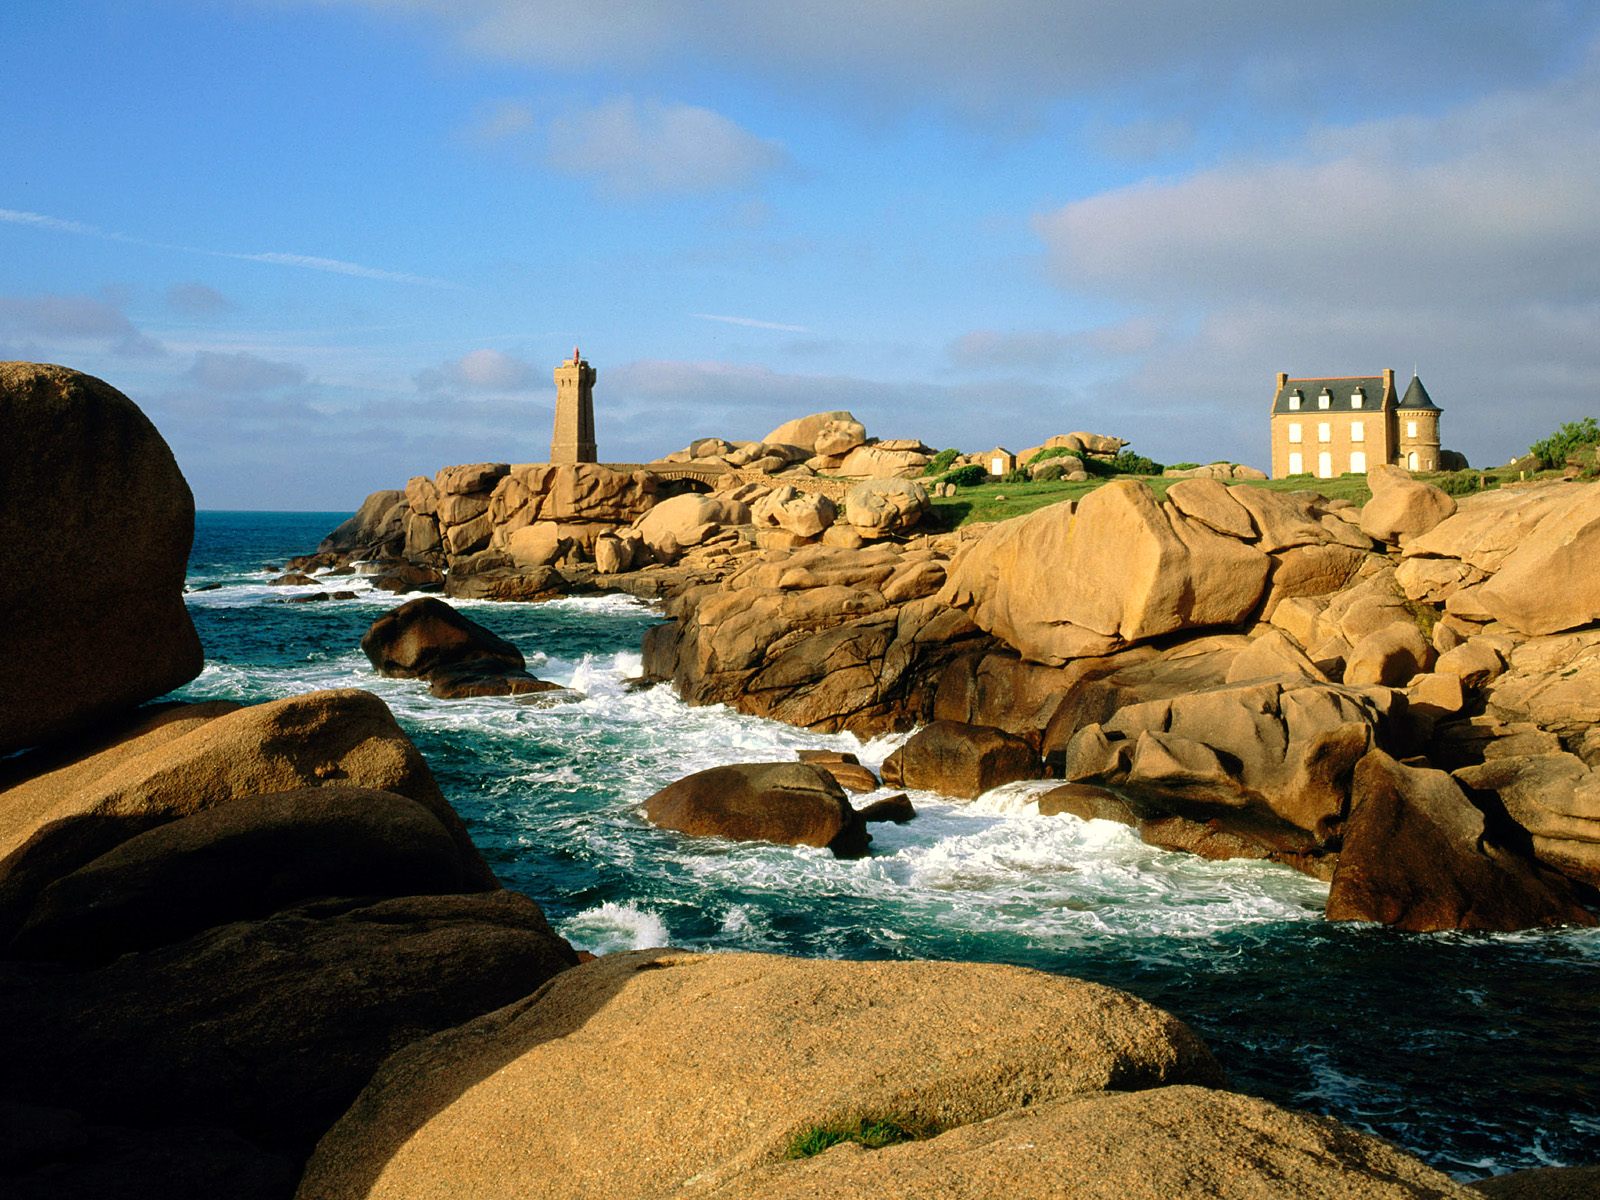 Francja - Ploumanach Rocks and Lighthouse, Bretagne, France.jpg